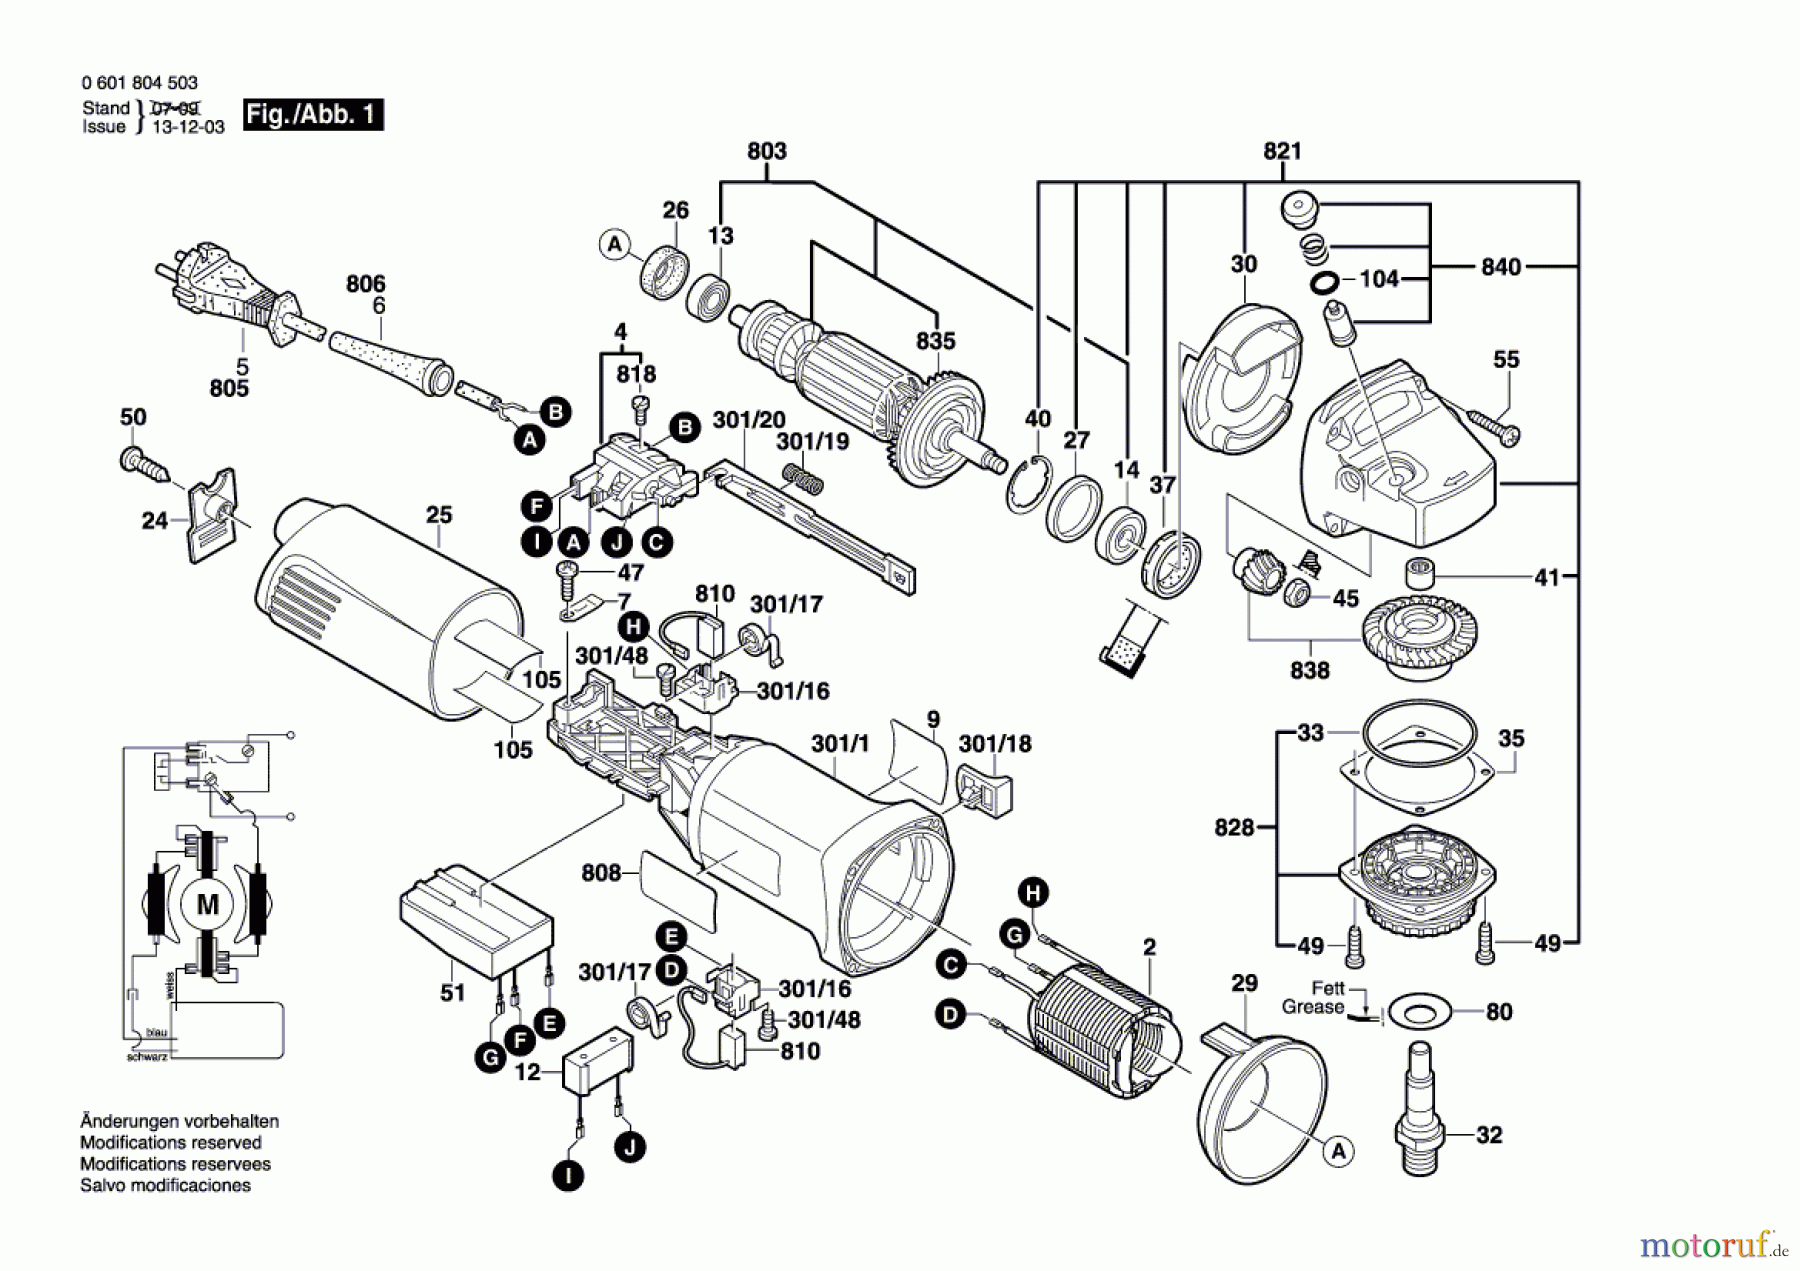  Bosch Werkzeug Winkelschleifer GWS 14-125C Seite 1